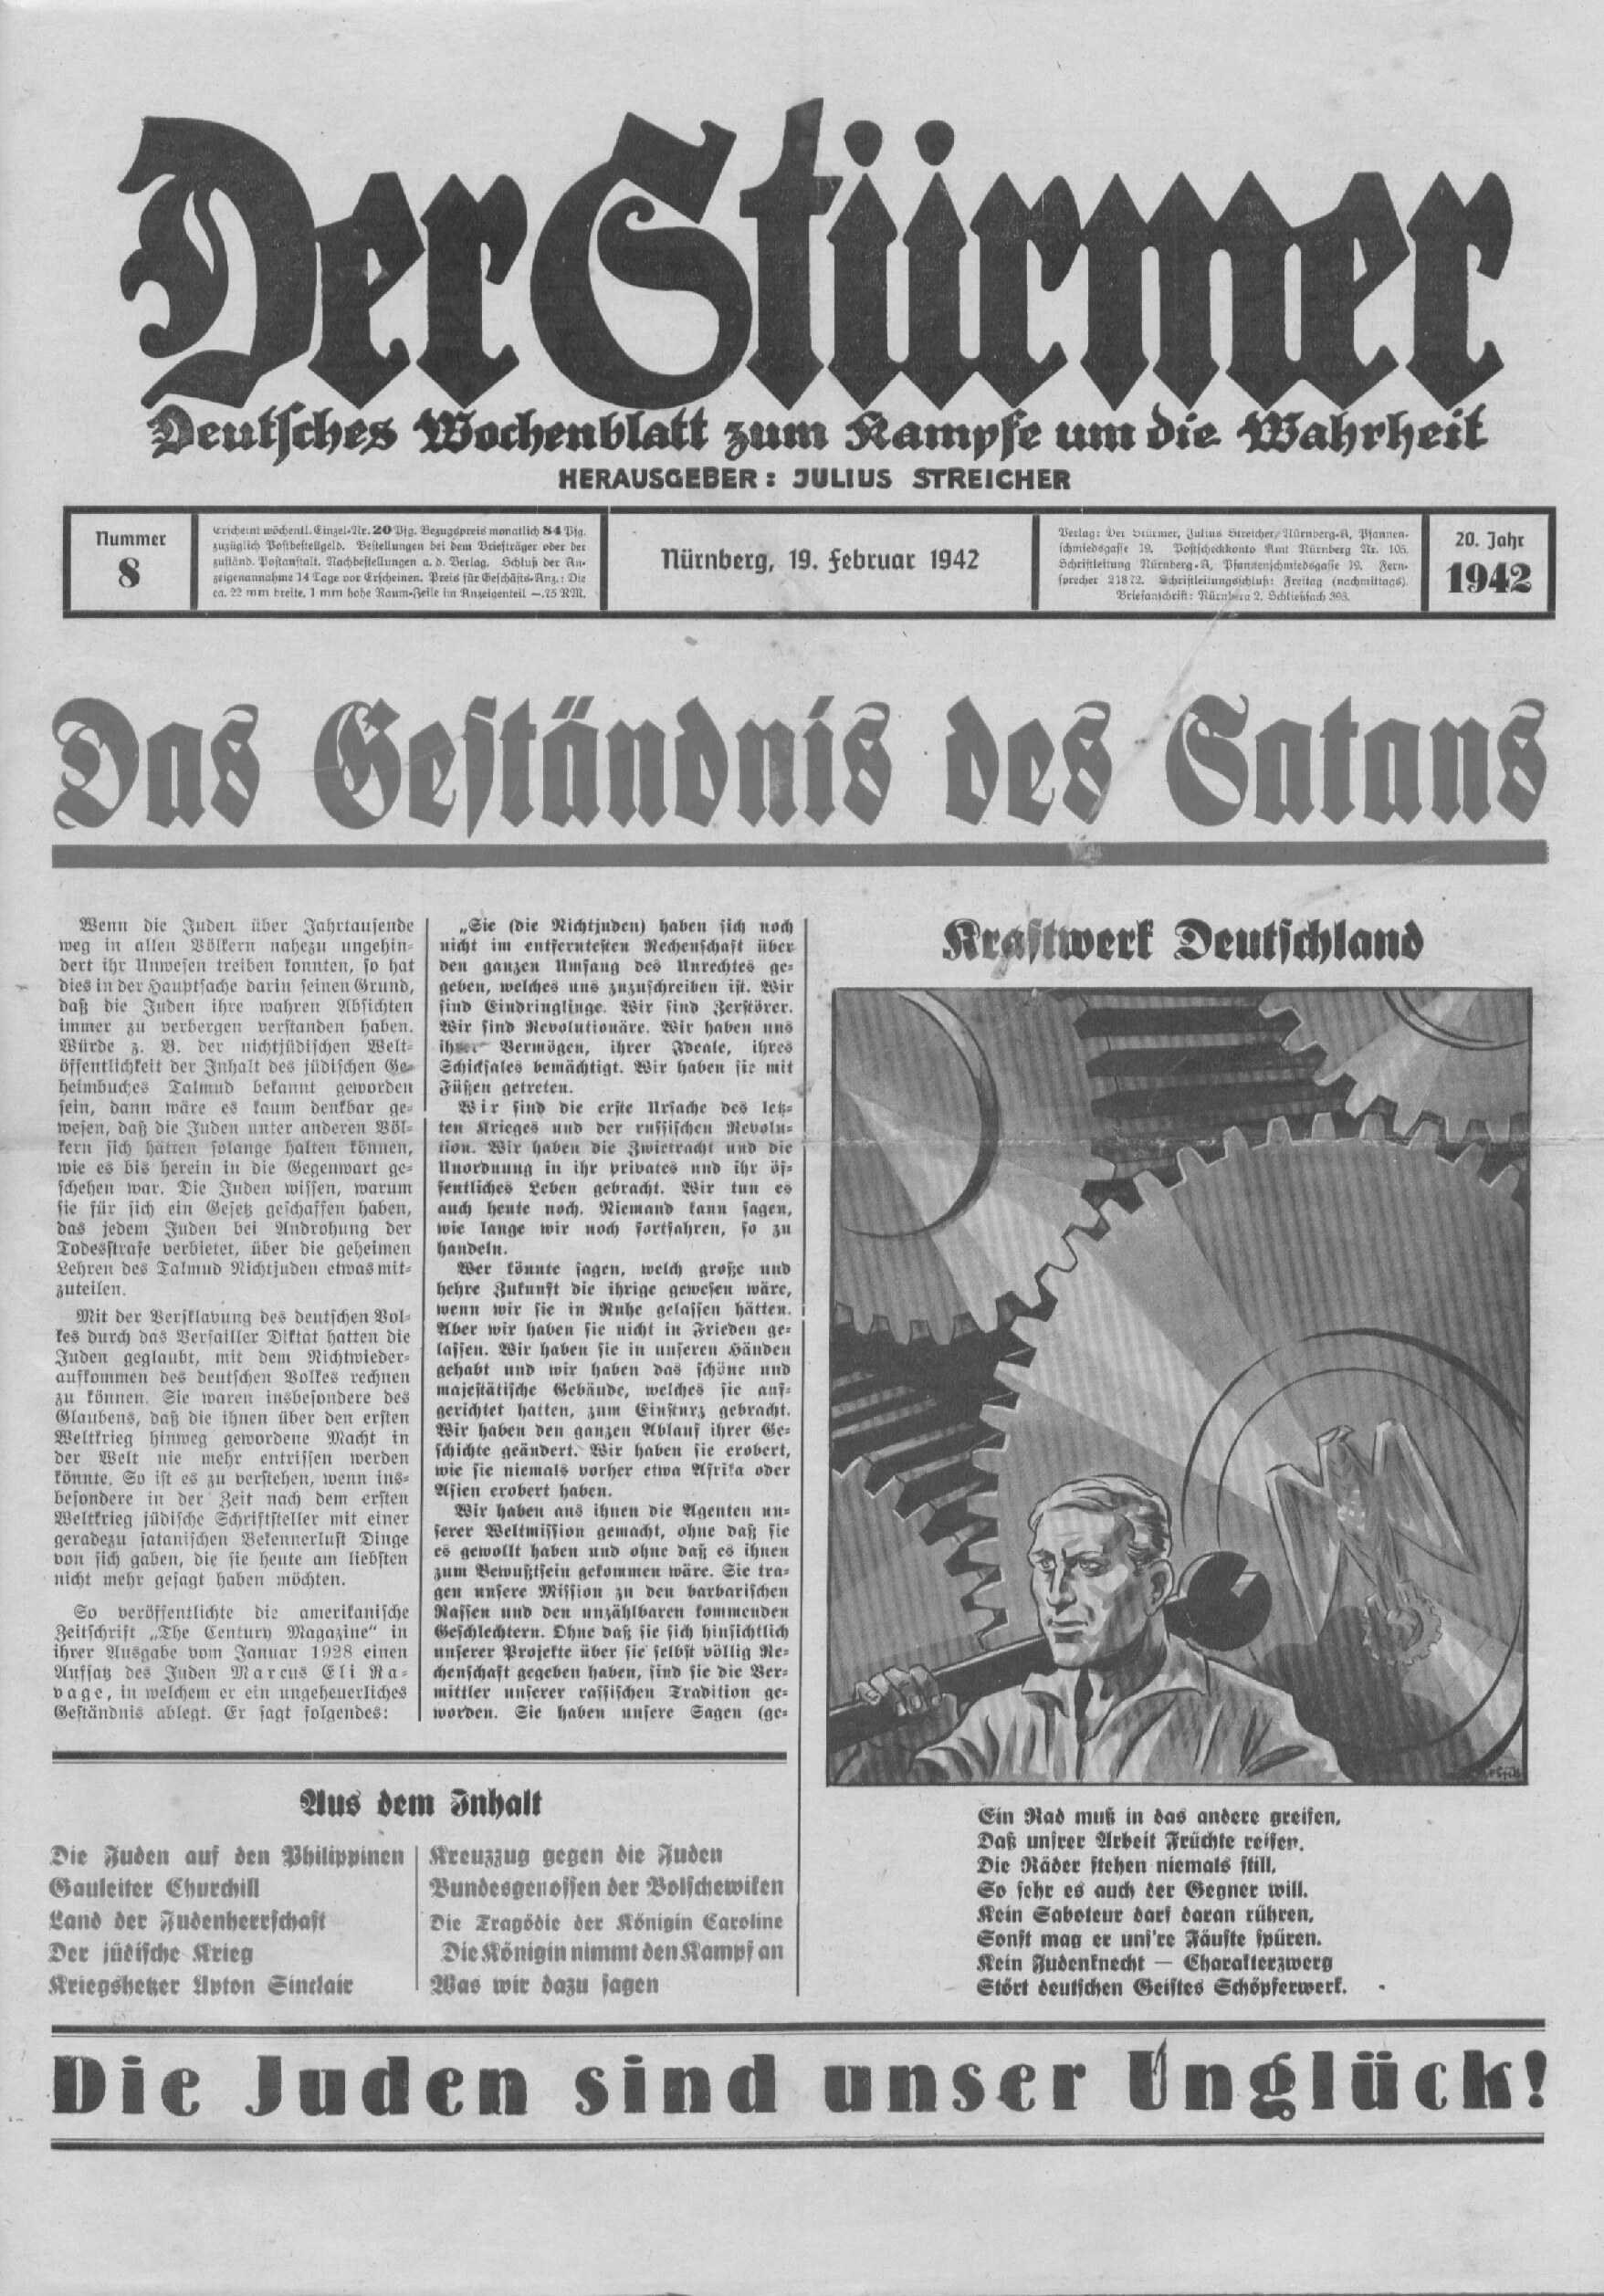 Der Stürmer - 1942 Nr. 08 - Das Geständnis des Satans